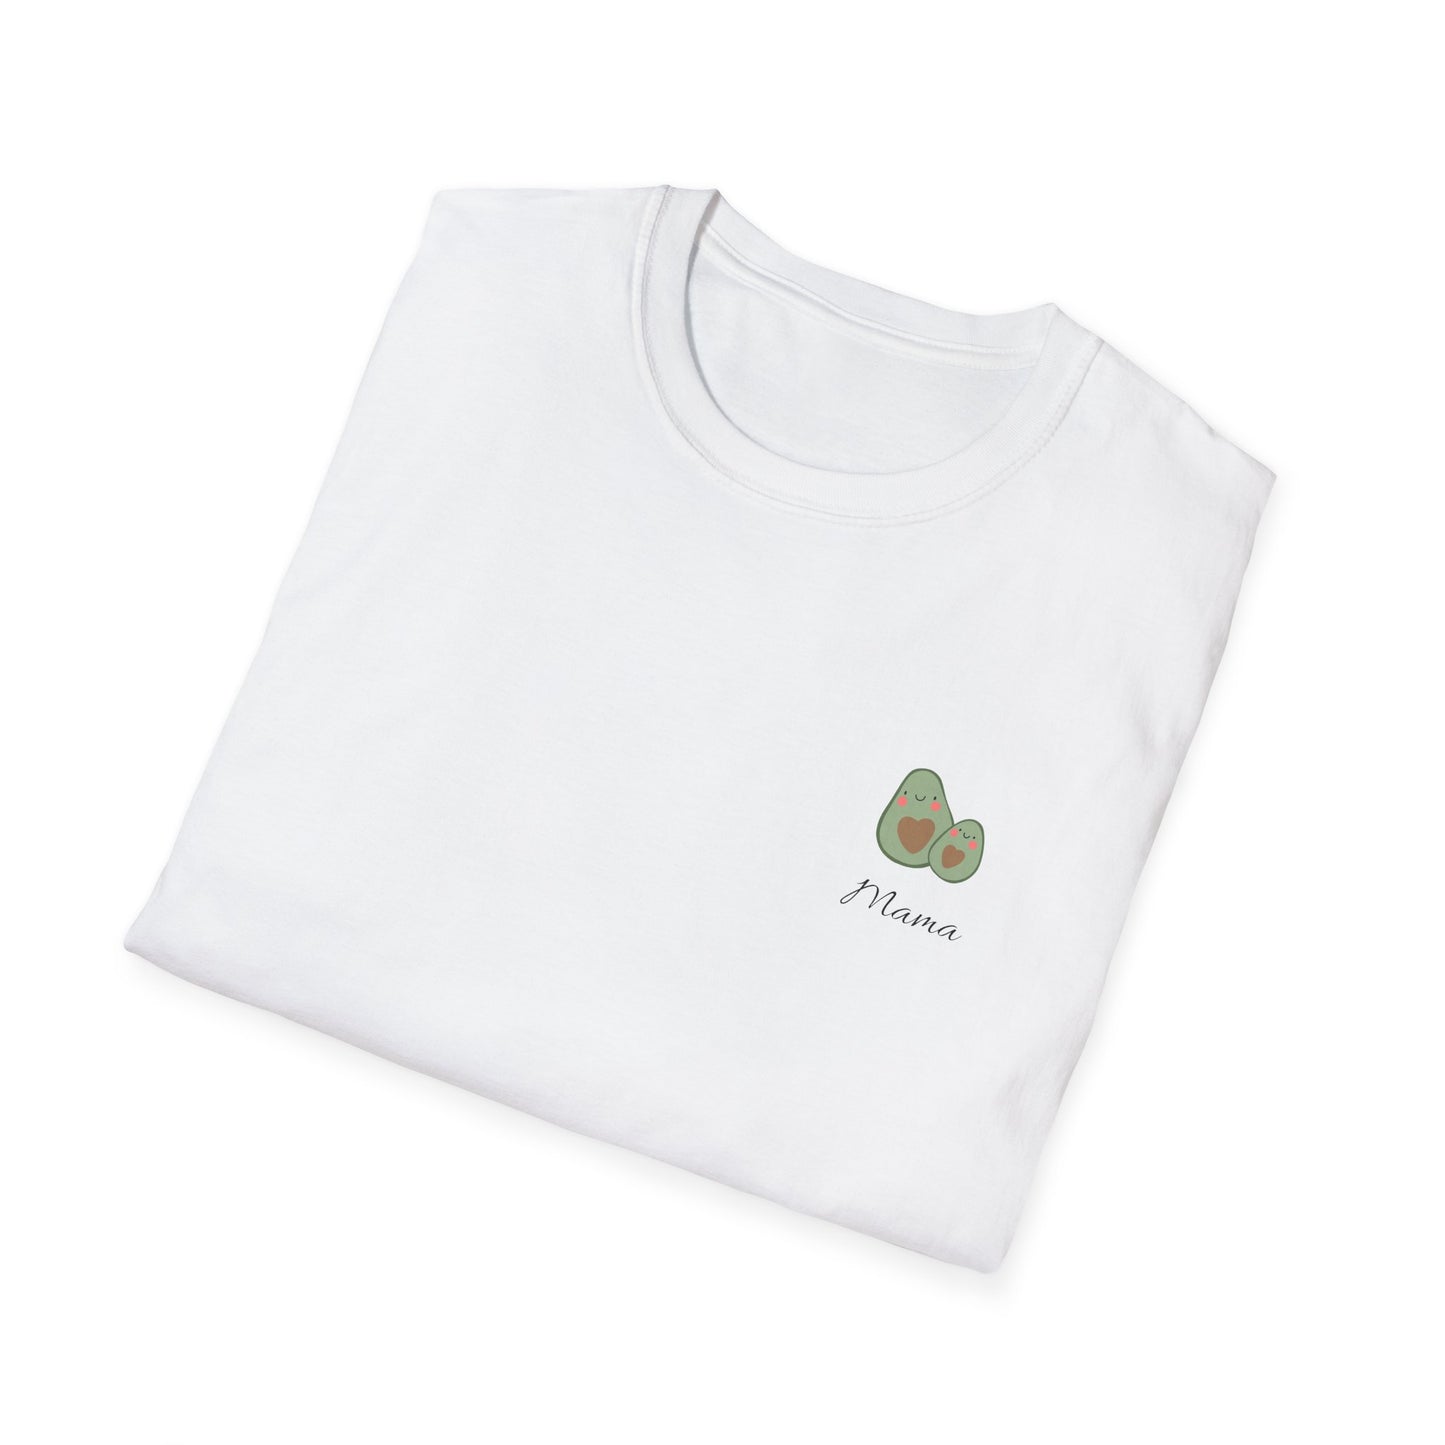 Avocado Mama, T-Shirt